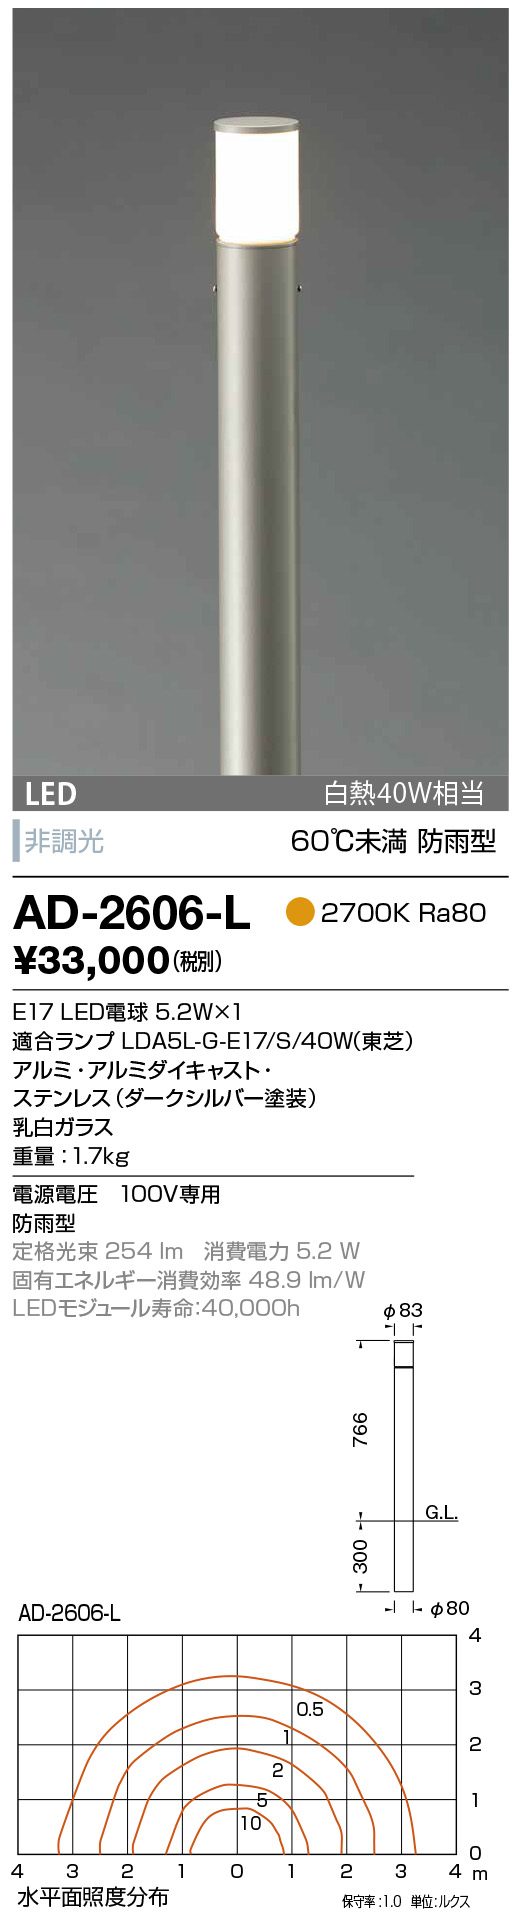 山田照明 AD-2606-L LEDの照明器具なら激安通販販売のベストプライスへ